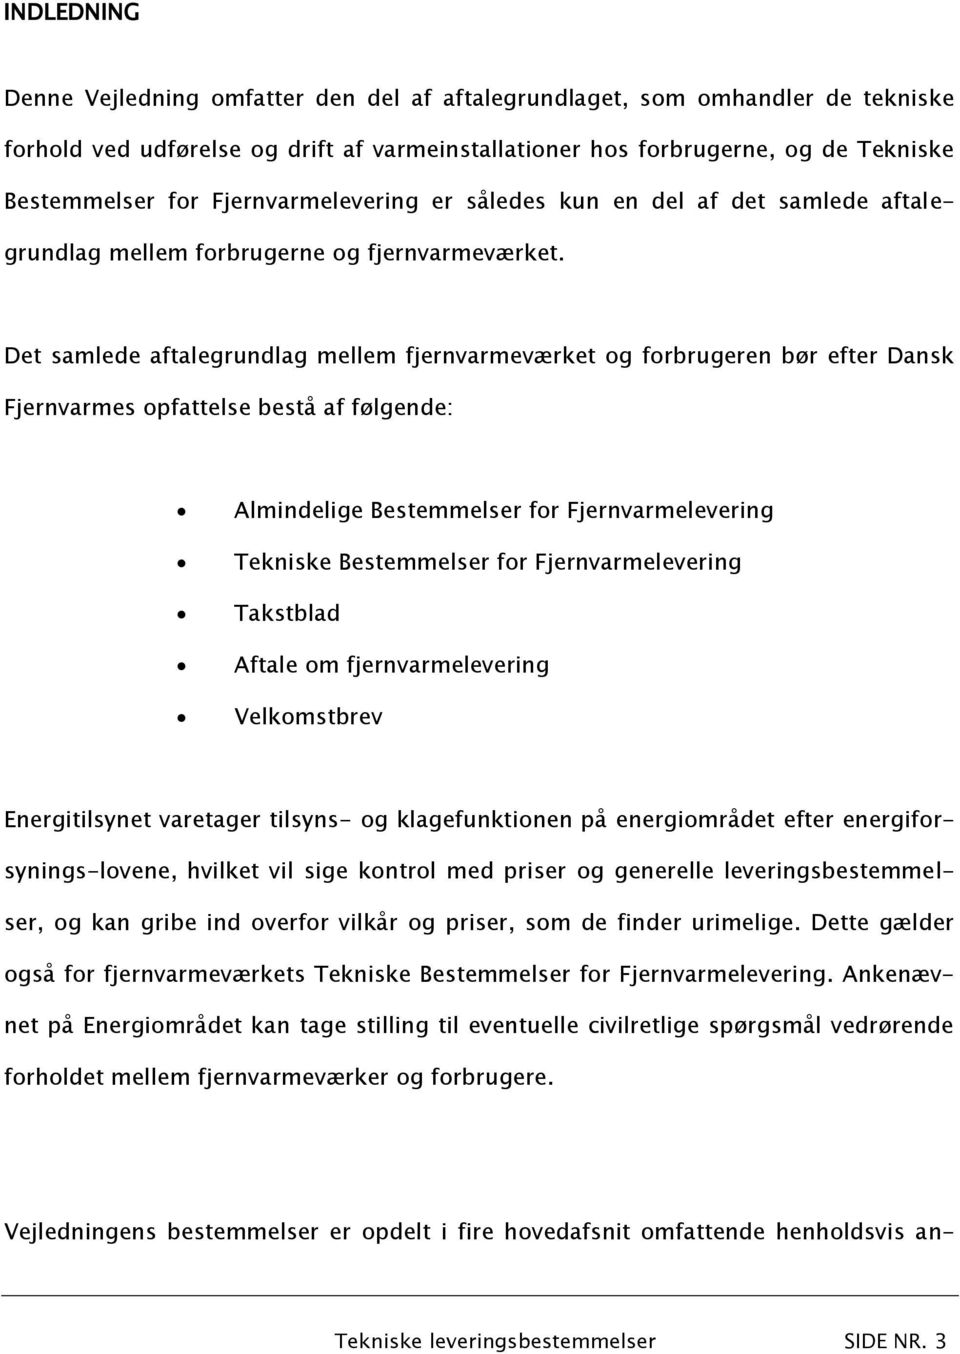 Det samlede aftalegrundlag mellem fjernvarmeværket og forbrugeren bør efter Dansk Fjernvarmes opfattelse bestå af følgende: Almindelige Bestemmelser for Fjernvarmelevering Tekniske Bestemmelser for